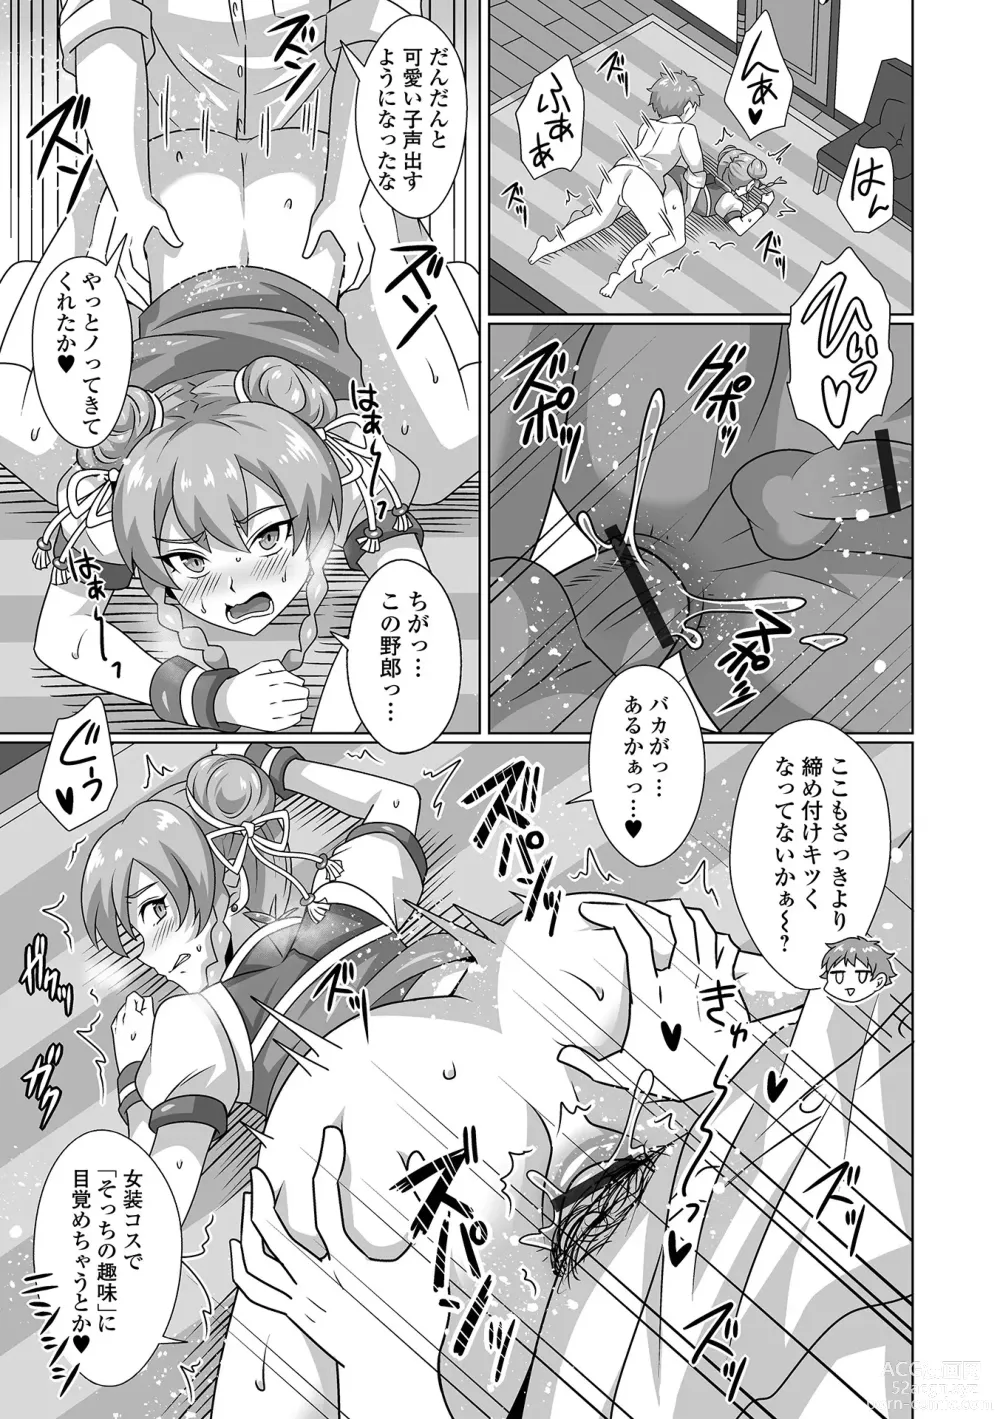 Page 81 of manga Gekkan Web Otoko no Ko-llection! S Vol. 92